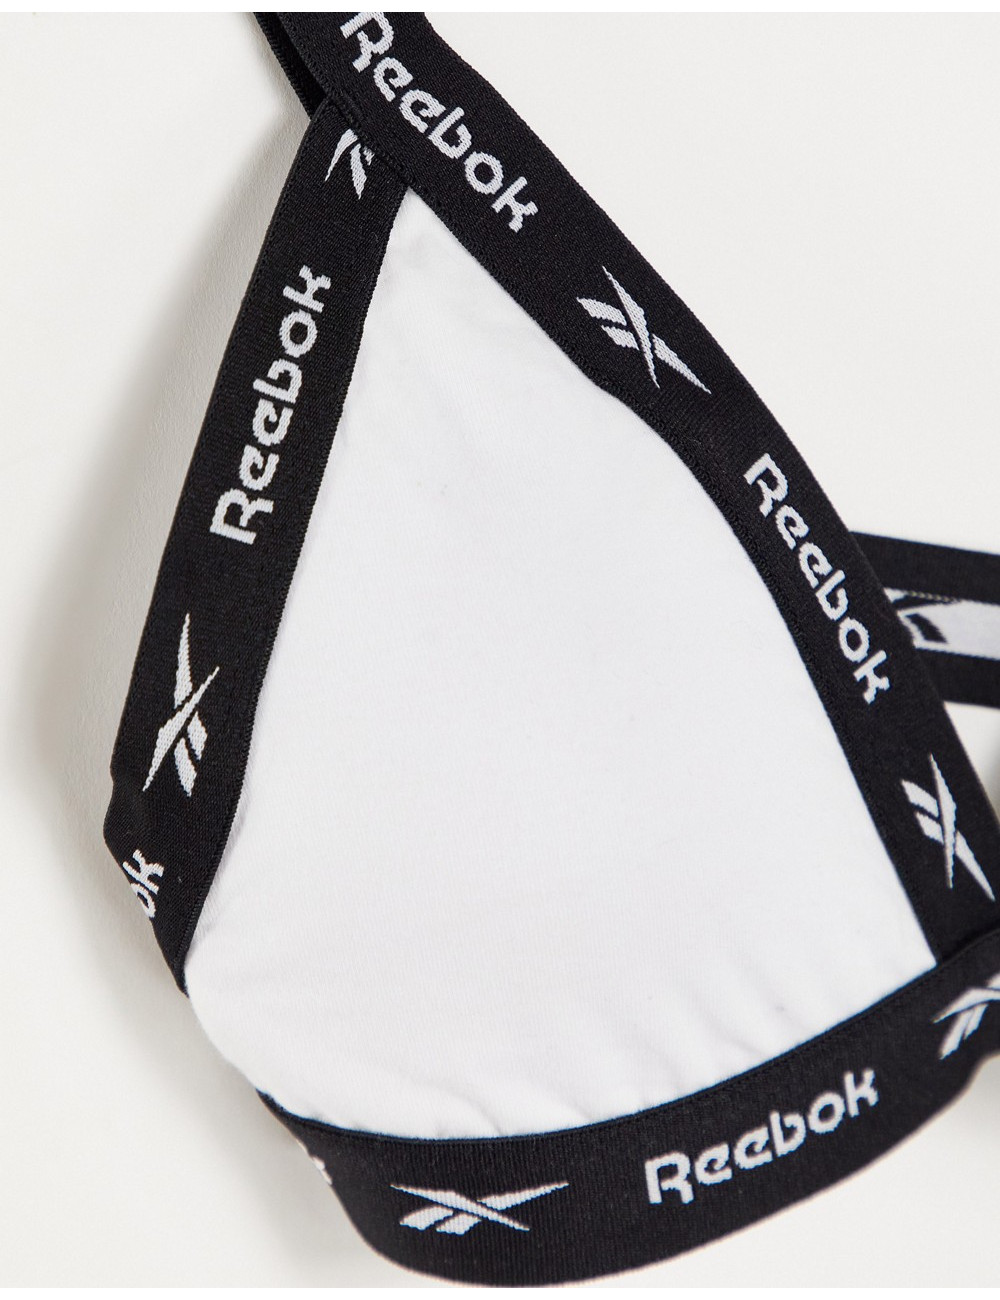 Reebok sports bra with logo...